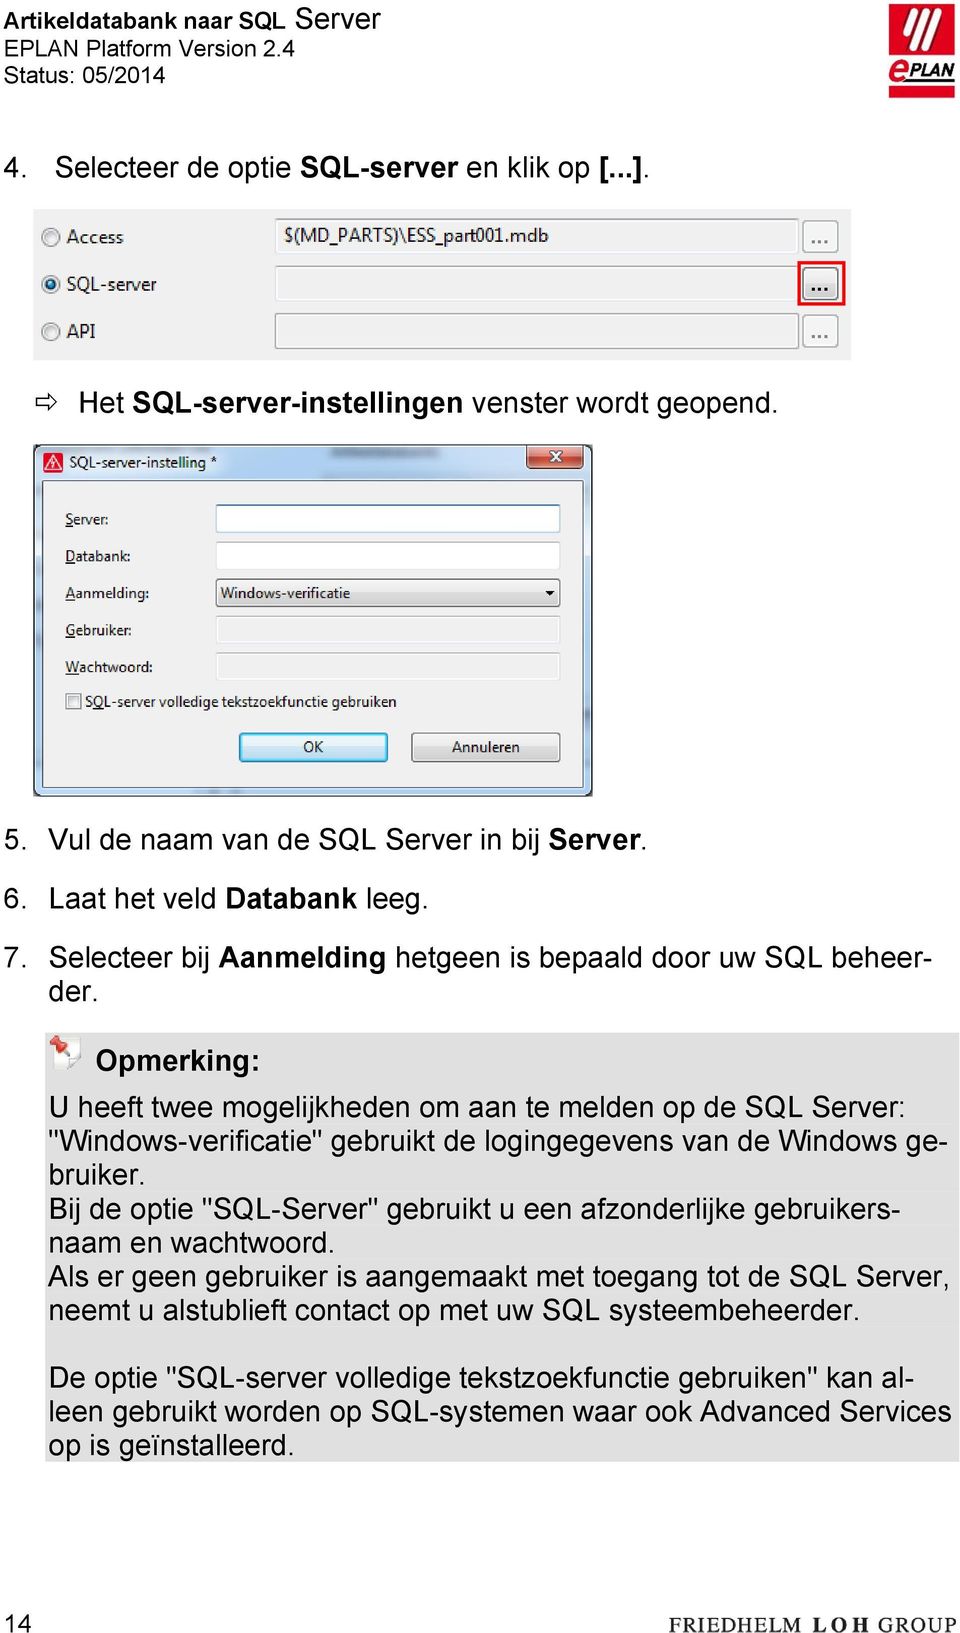 Opmerking: U heeft twee mogelijkheden om aan te melden op de SQL Server: "Windows-verificatie" gebruikt de logingegevens van de Windows gebruiker.